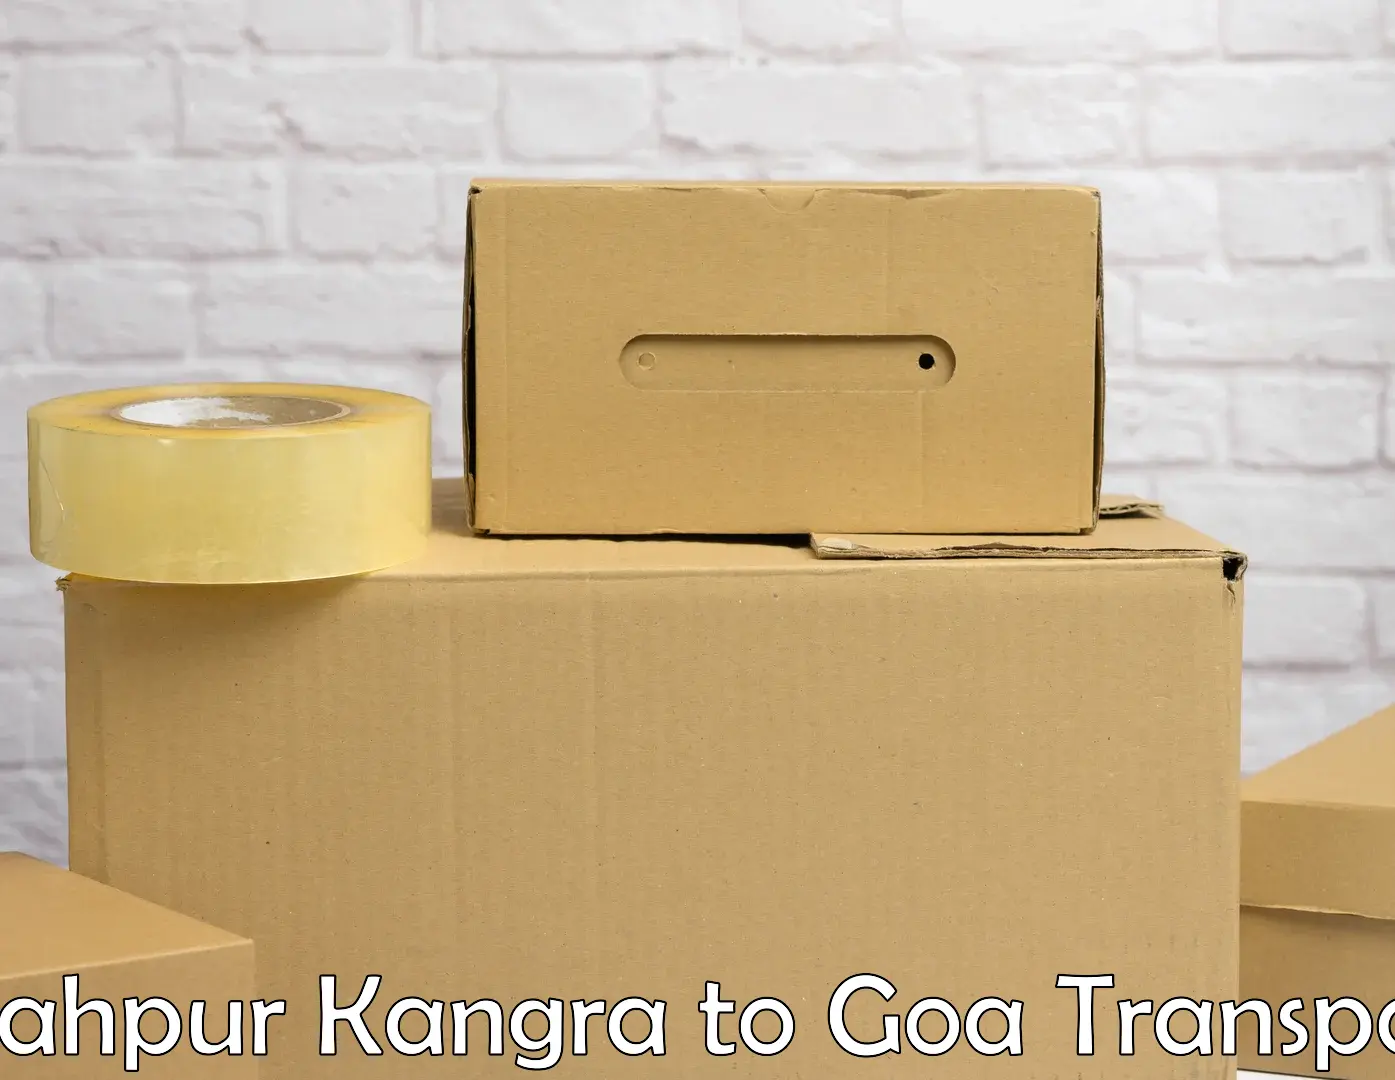 Daily parcel service transport Shahpur Kangra to Mormugao Port